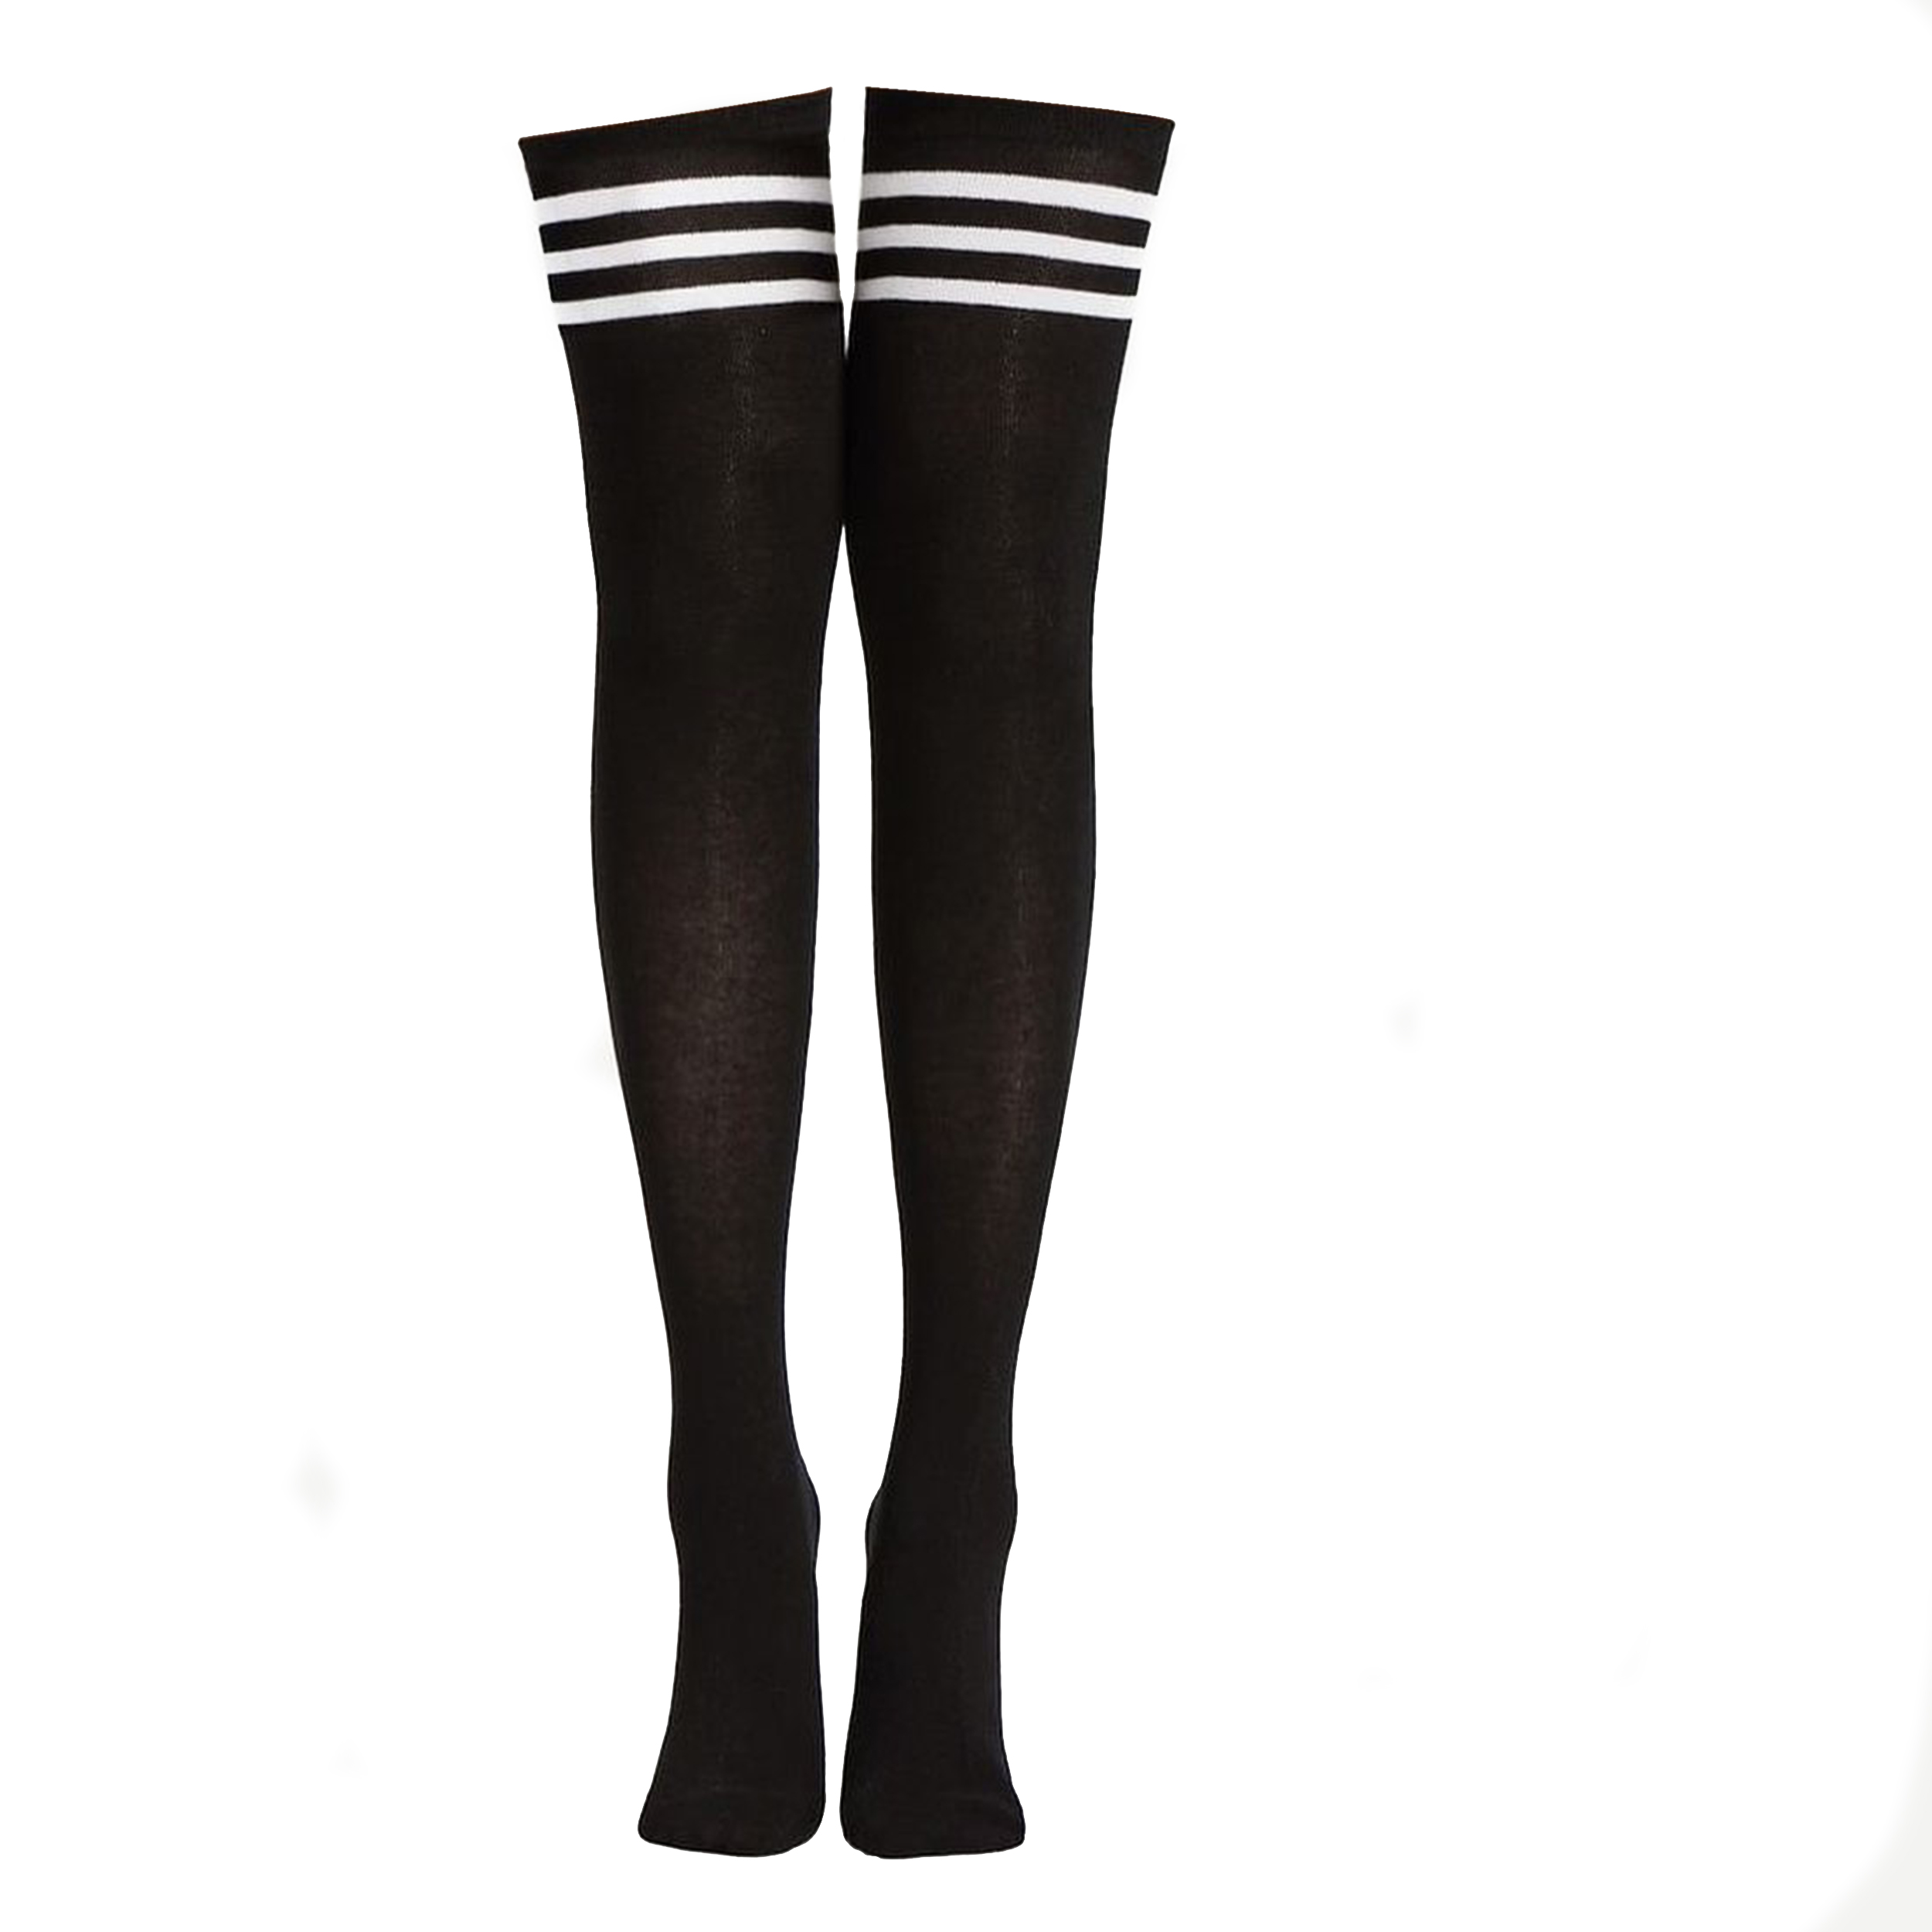 جوراب ساق بلند زنانه تن پوش هنگامه مدل بالا زانو رینگی مجموعه 2 عددی  -  - 3